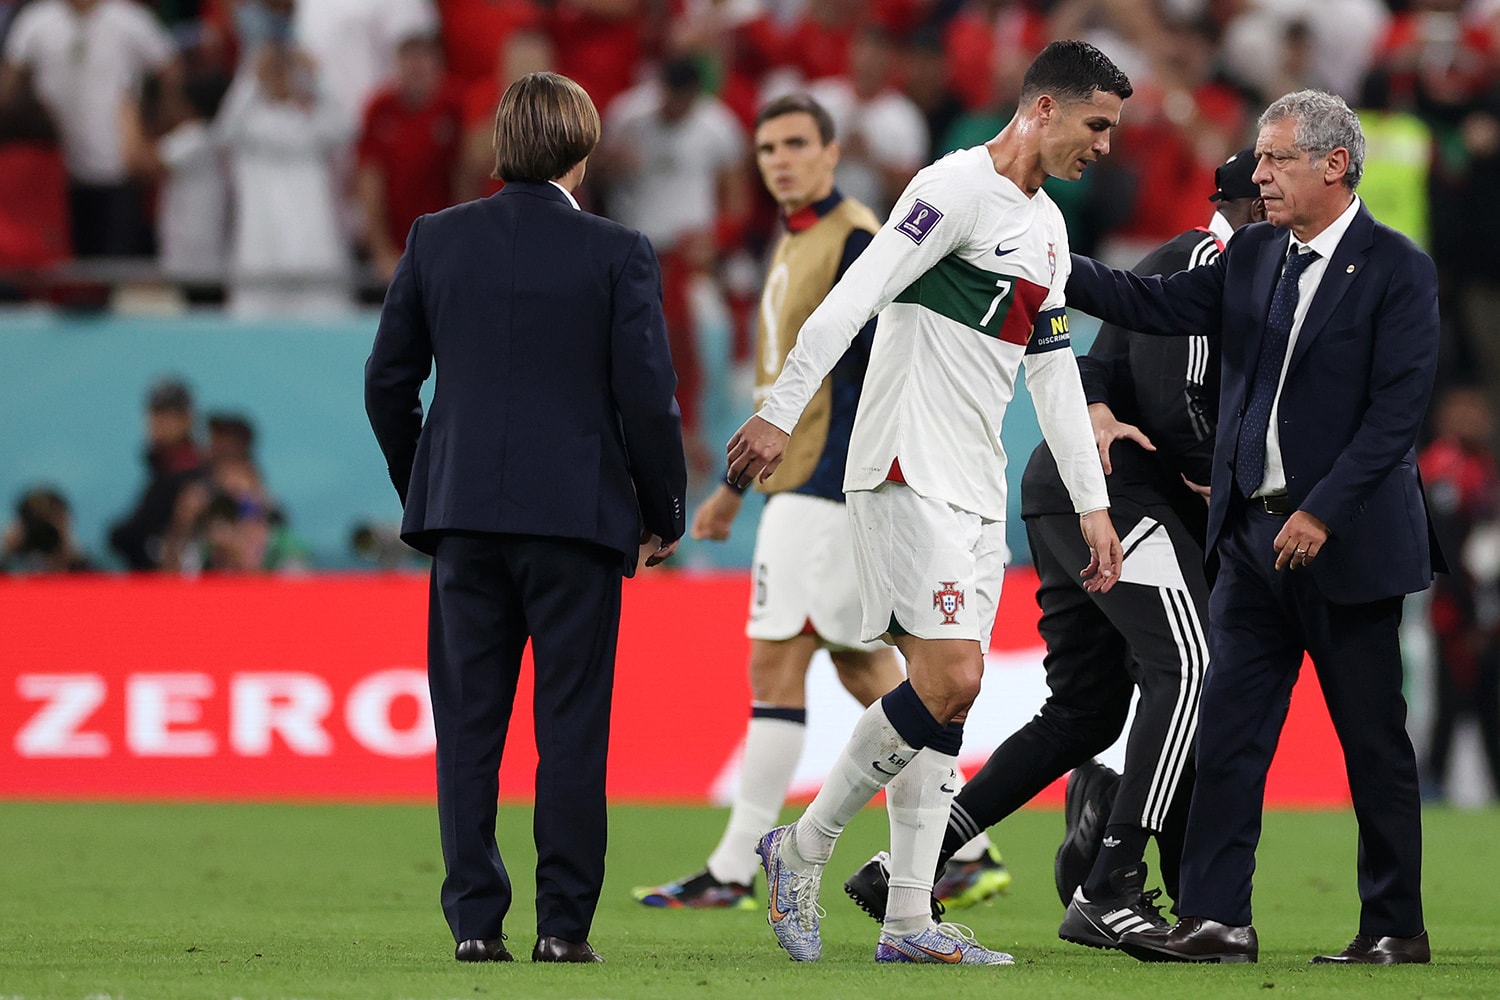 2022 世界盃 – 葡萄牙總教練 Fernando Santos 表示不後悔把 Cristiano Ronaldo 放在替補